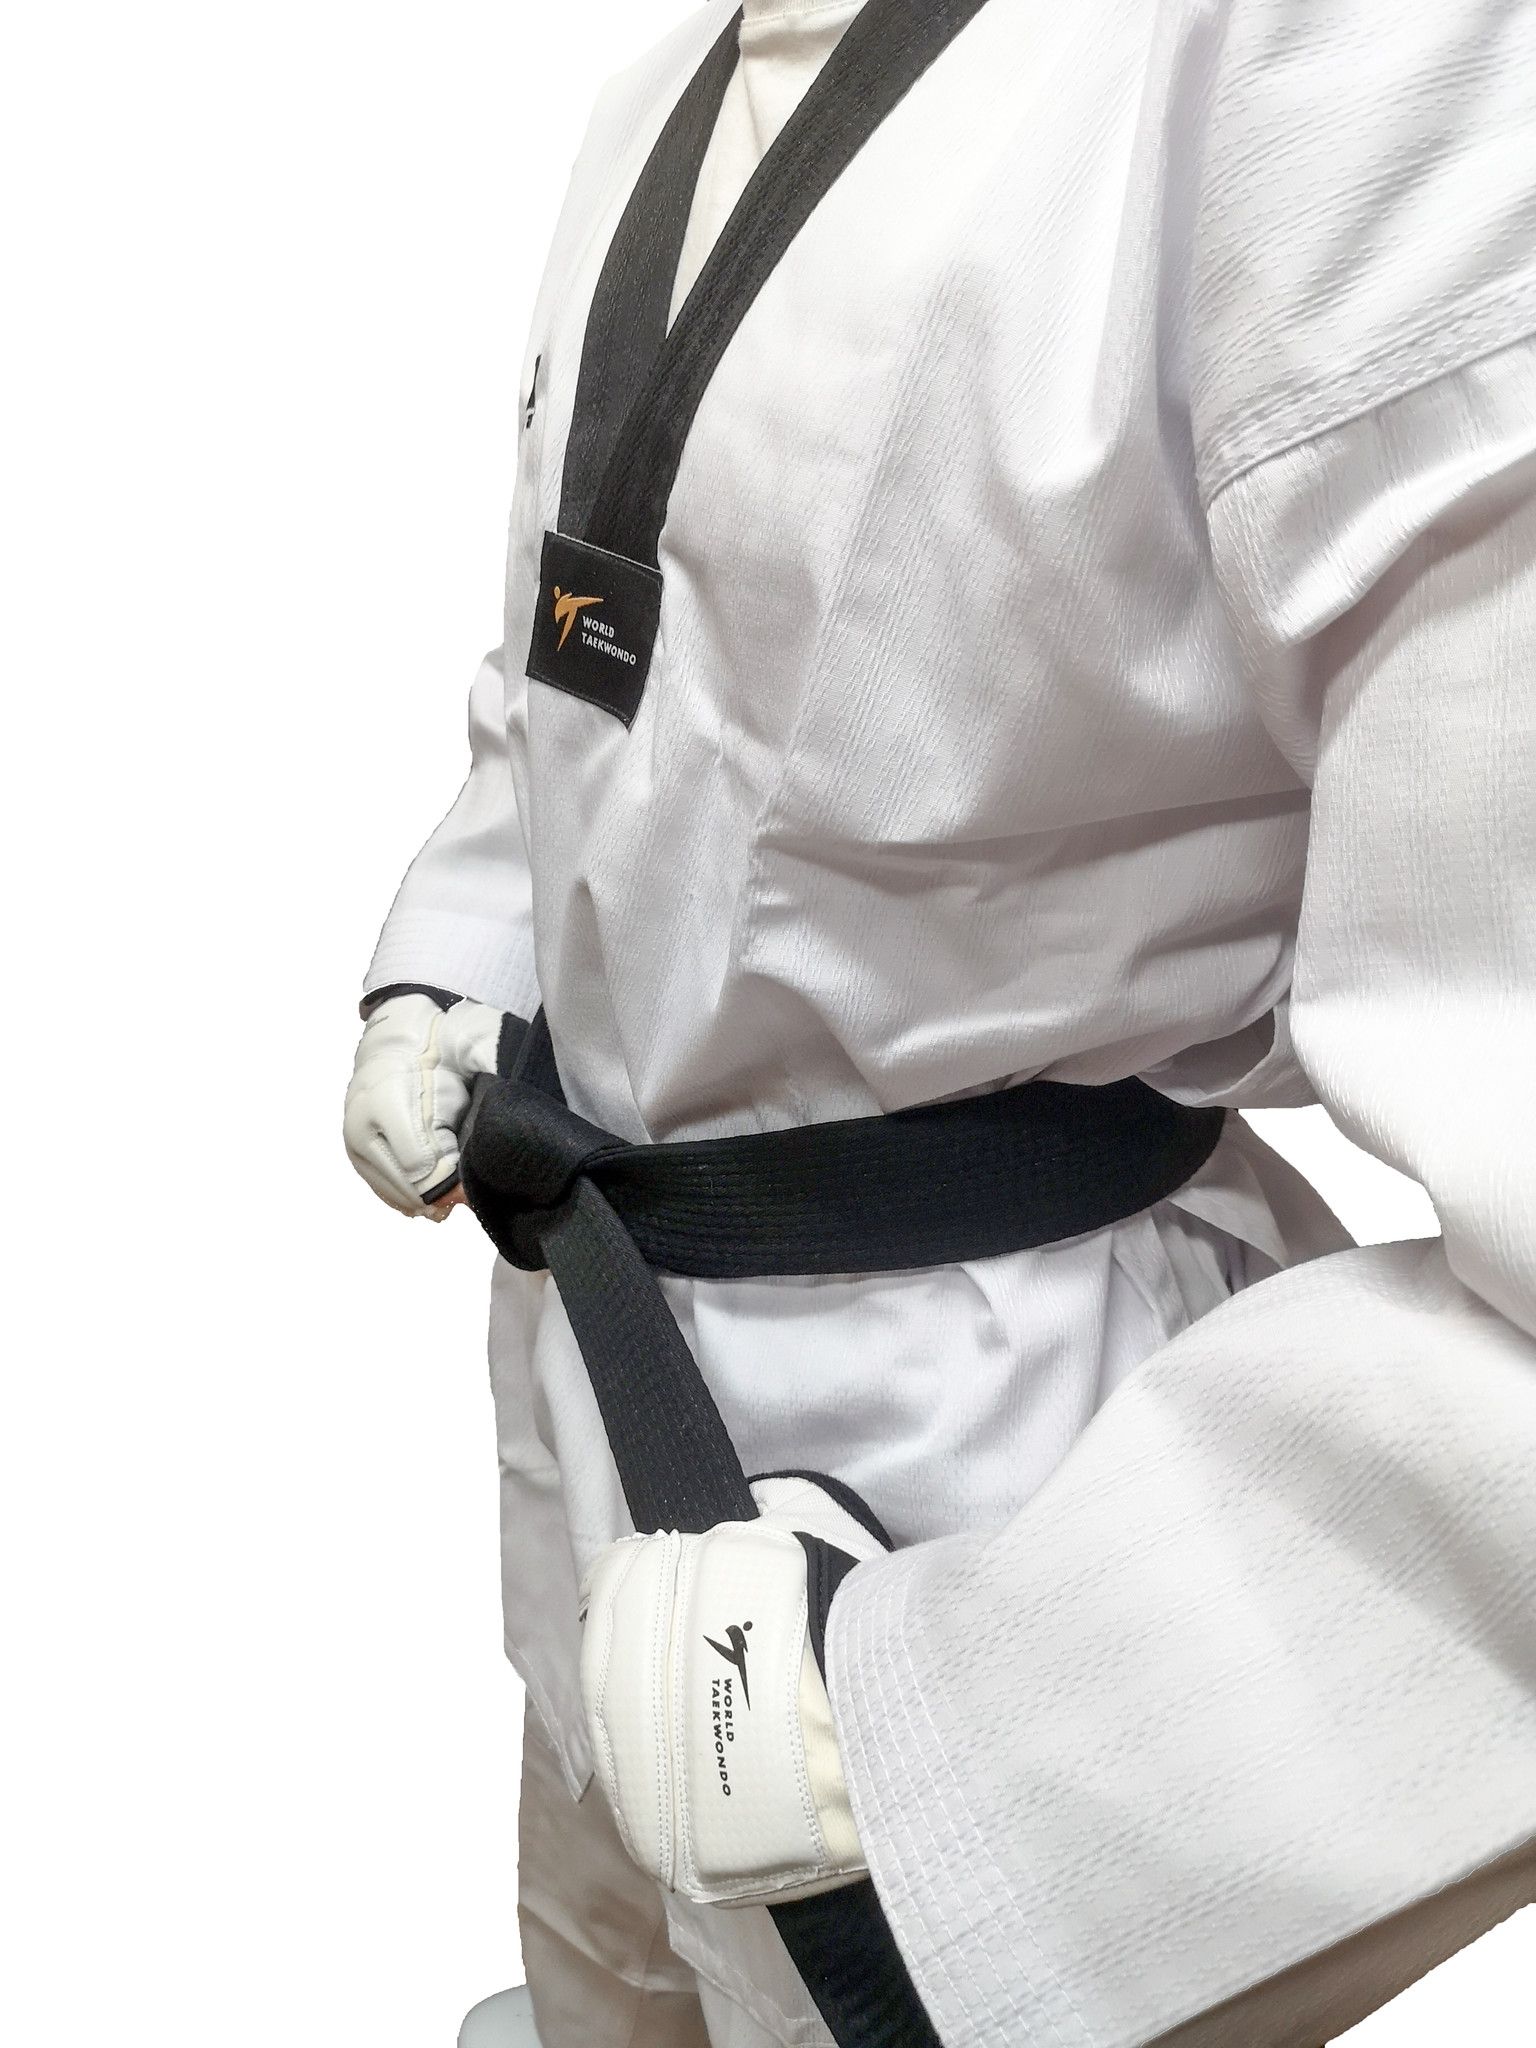 Dobok per Taekwondo Tusah Elite Uniform collo Nero Omologato WT WTF per competizioni ed allenamenti